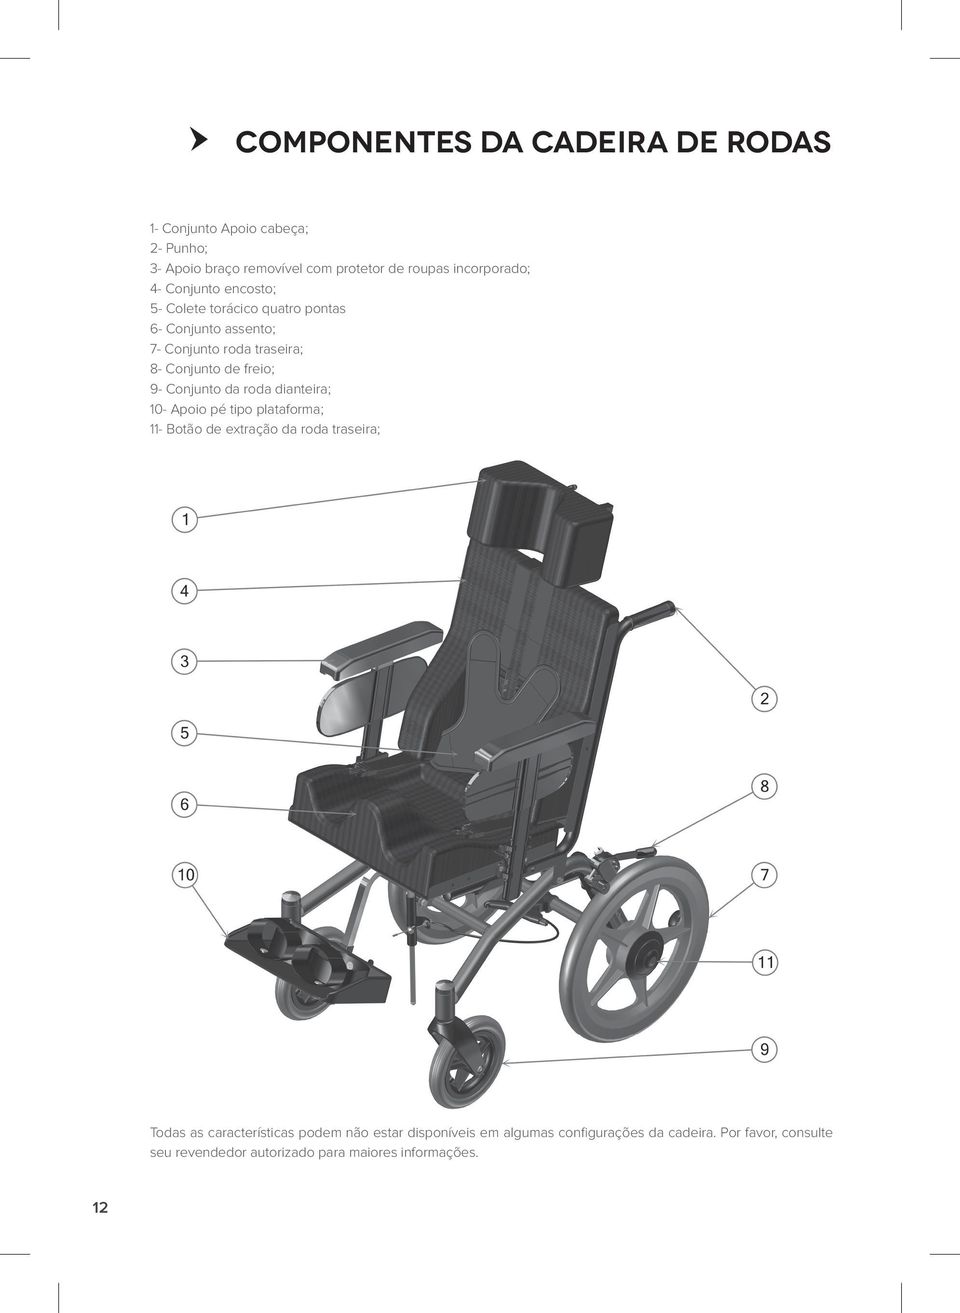 Conjunto da roda dianteira; 10- Apoio pé tipo plataforma; 11- Botão de extração da roda traseira; Todas as características podem